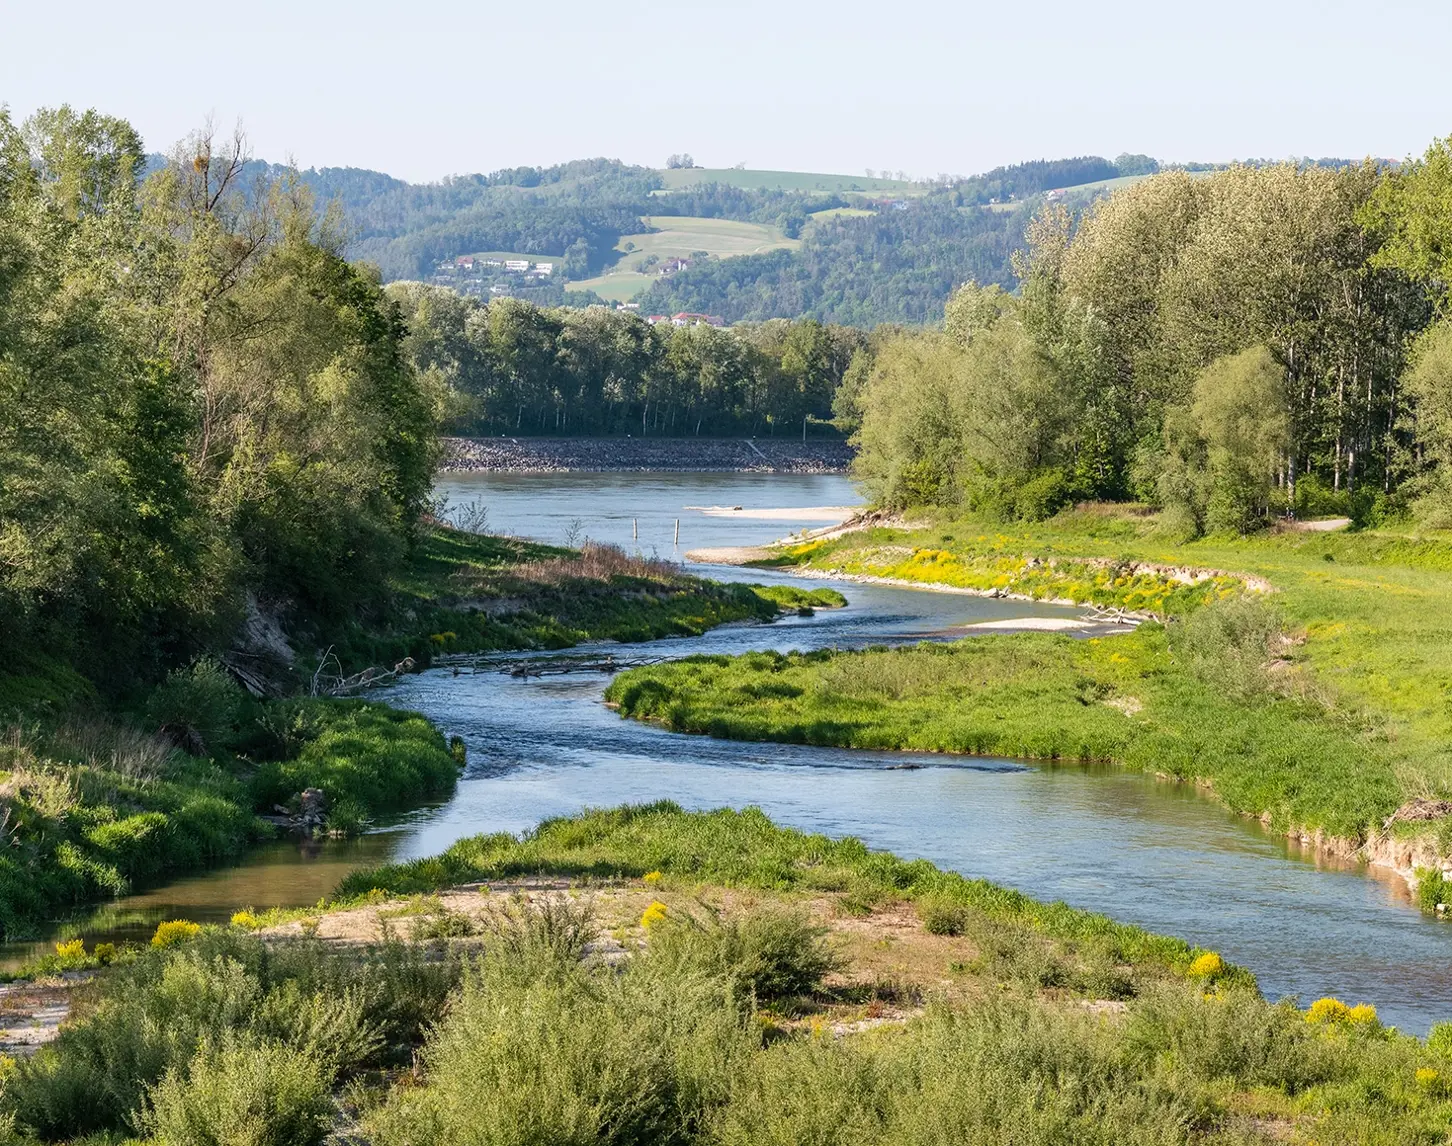 Sattes Grün überzieht die Ufer des Augewässers in der Nähe des Kraftwerks Ottensheim-Wilhering. Die Fischwanderhilfe mäandert durch die Natur. Im Hintergrund sieht man kleinere Ortschaften.